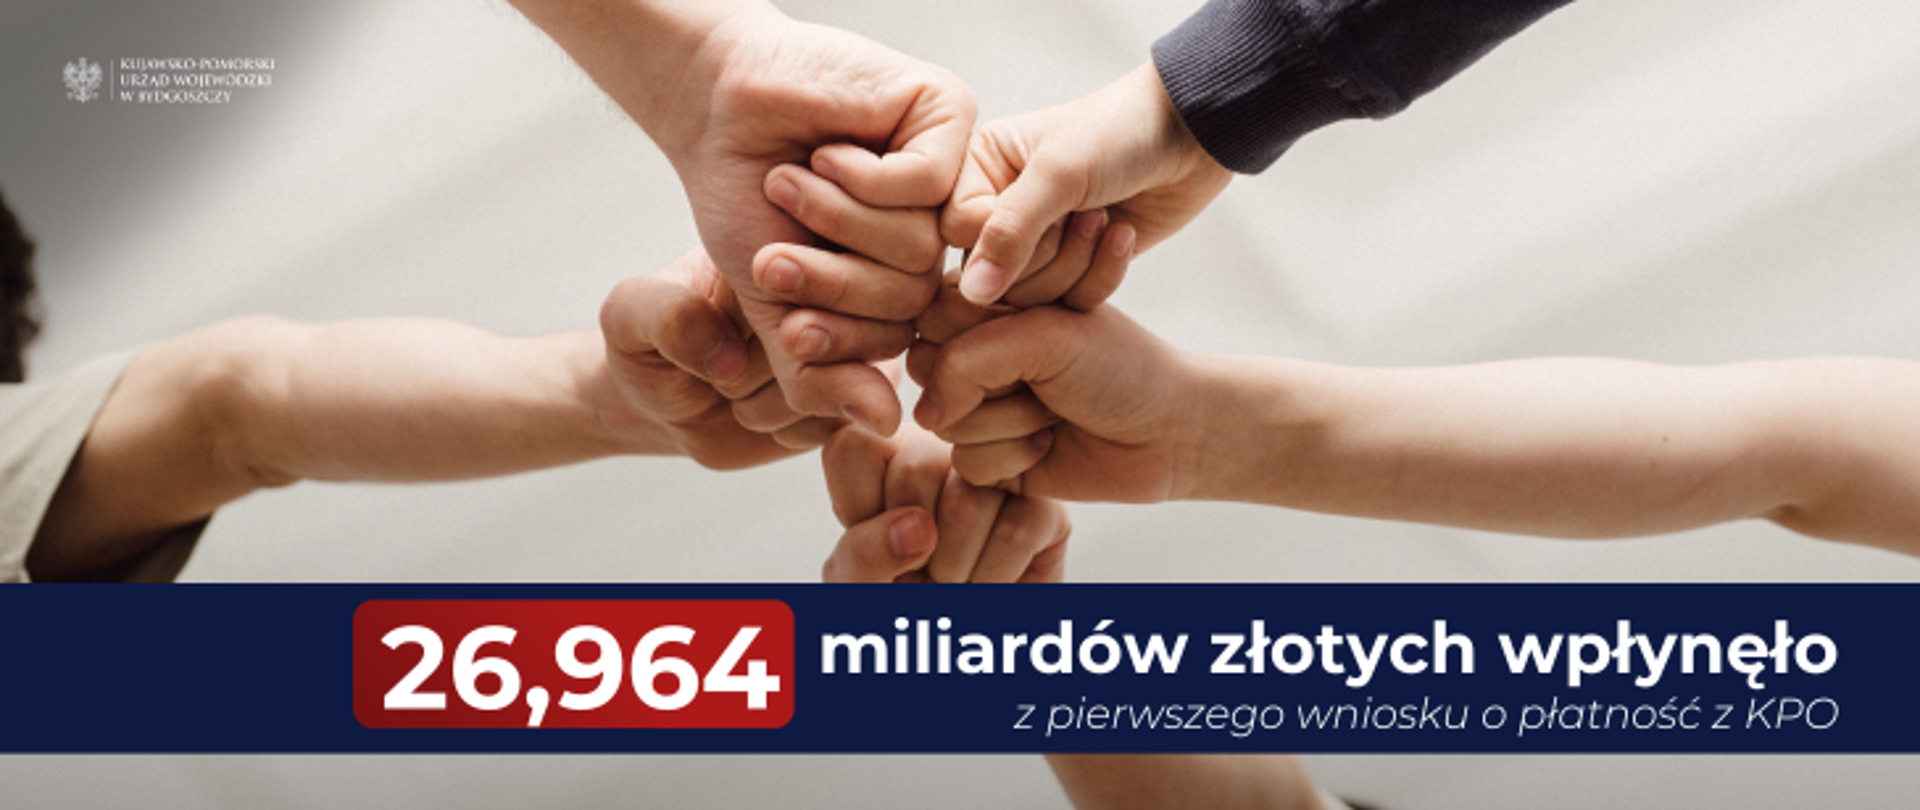 Polska otrzymała 27 mld zł z pierwszego wniosku o płatność z KPO
